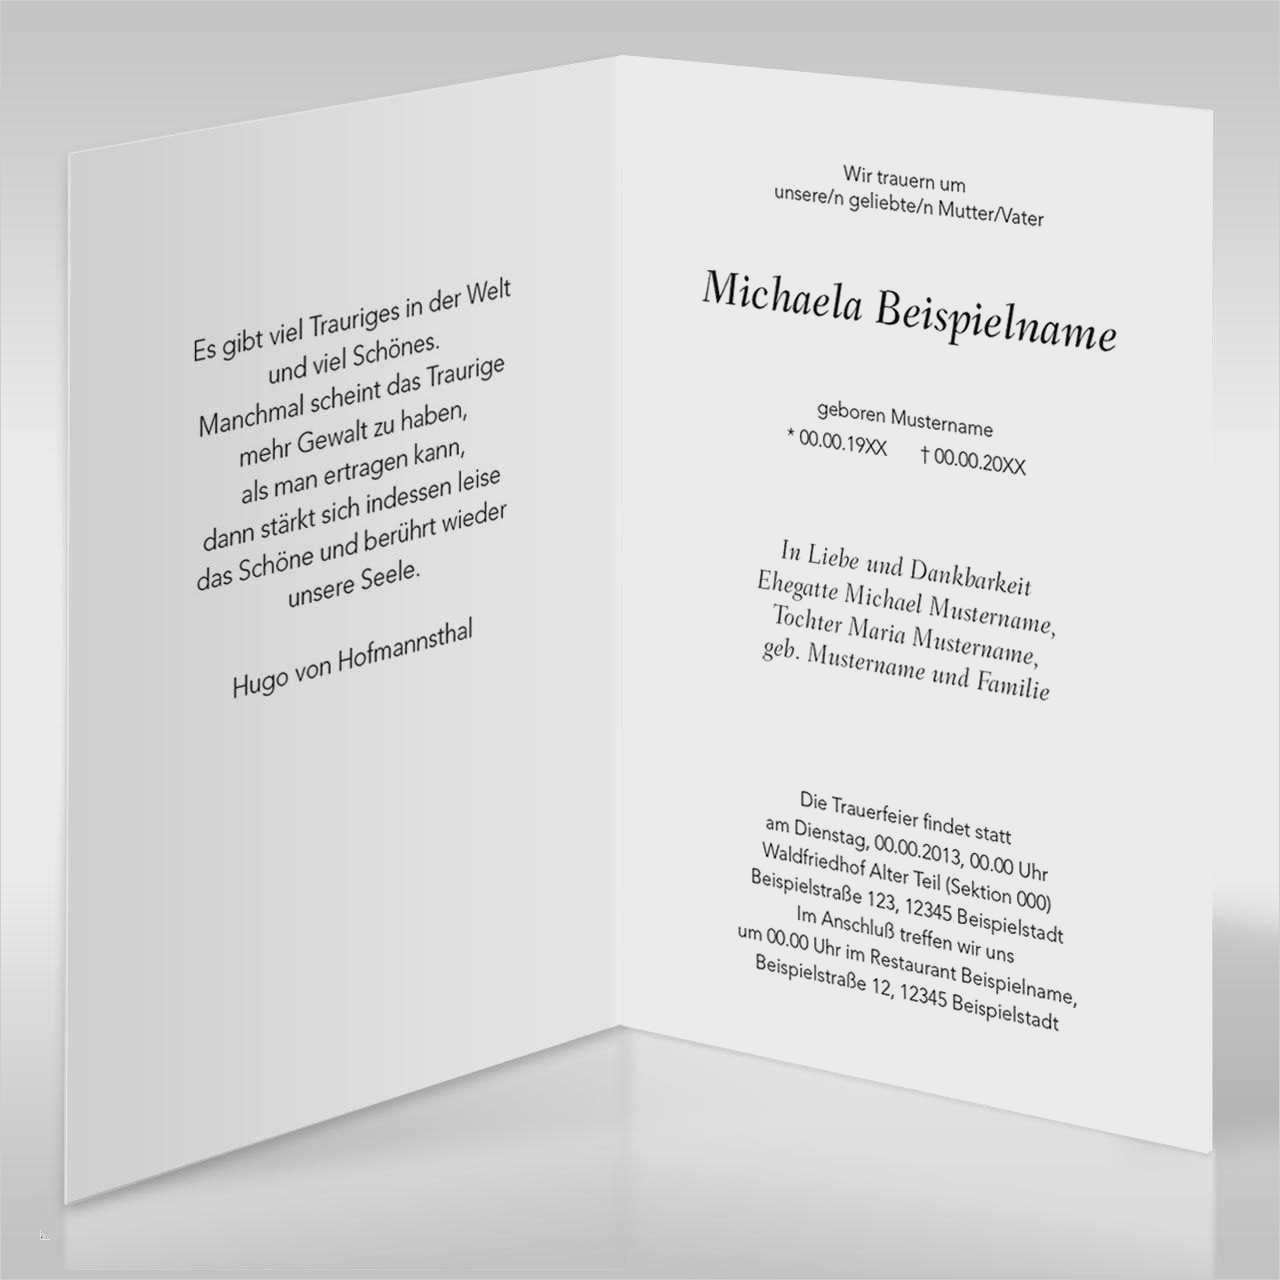 Grossartig Trauerkarten Danksagung Vorlagen Solche Konnen Einstellen In Microsoft Word Trauerkarten Danksagung Geburtstag Sms Danksagung Beerdigung